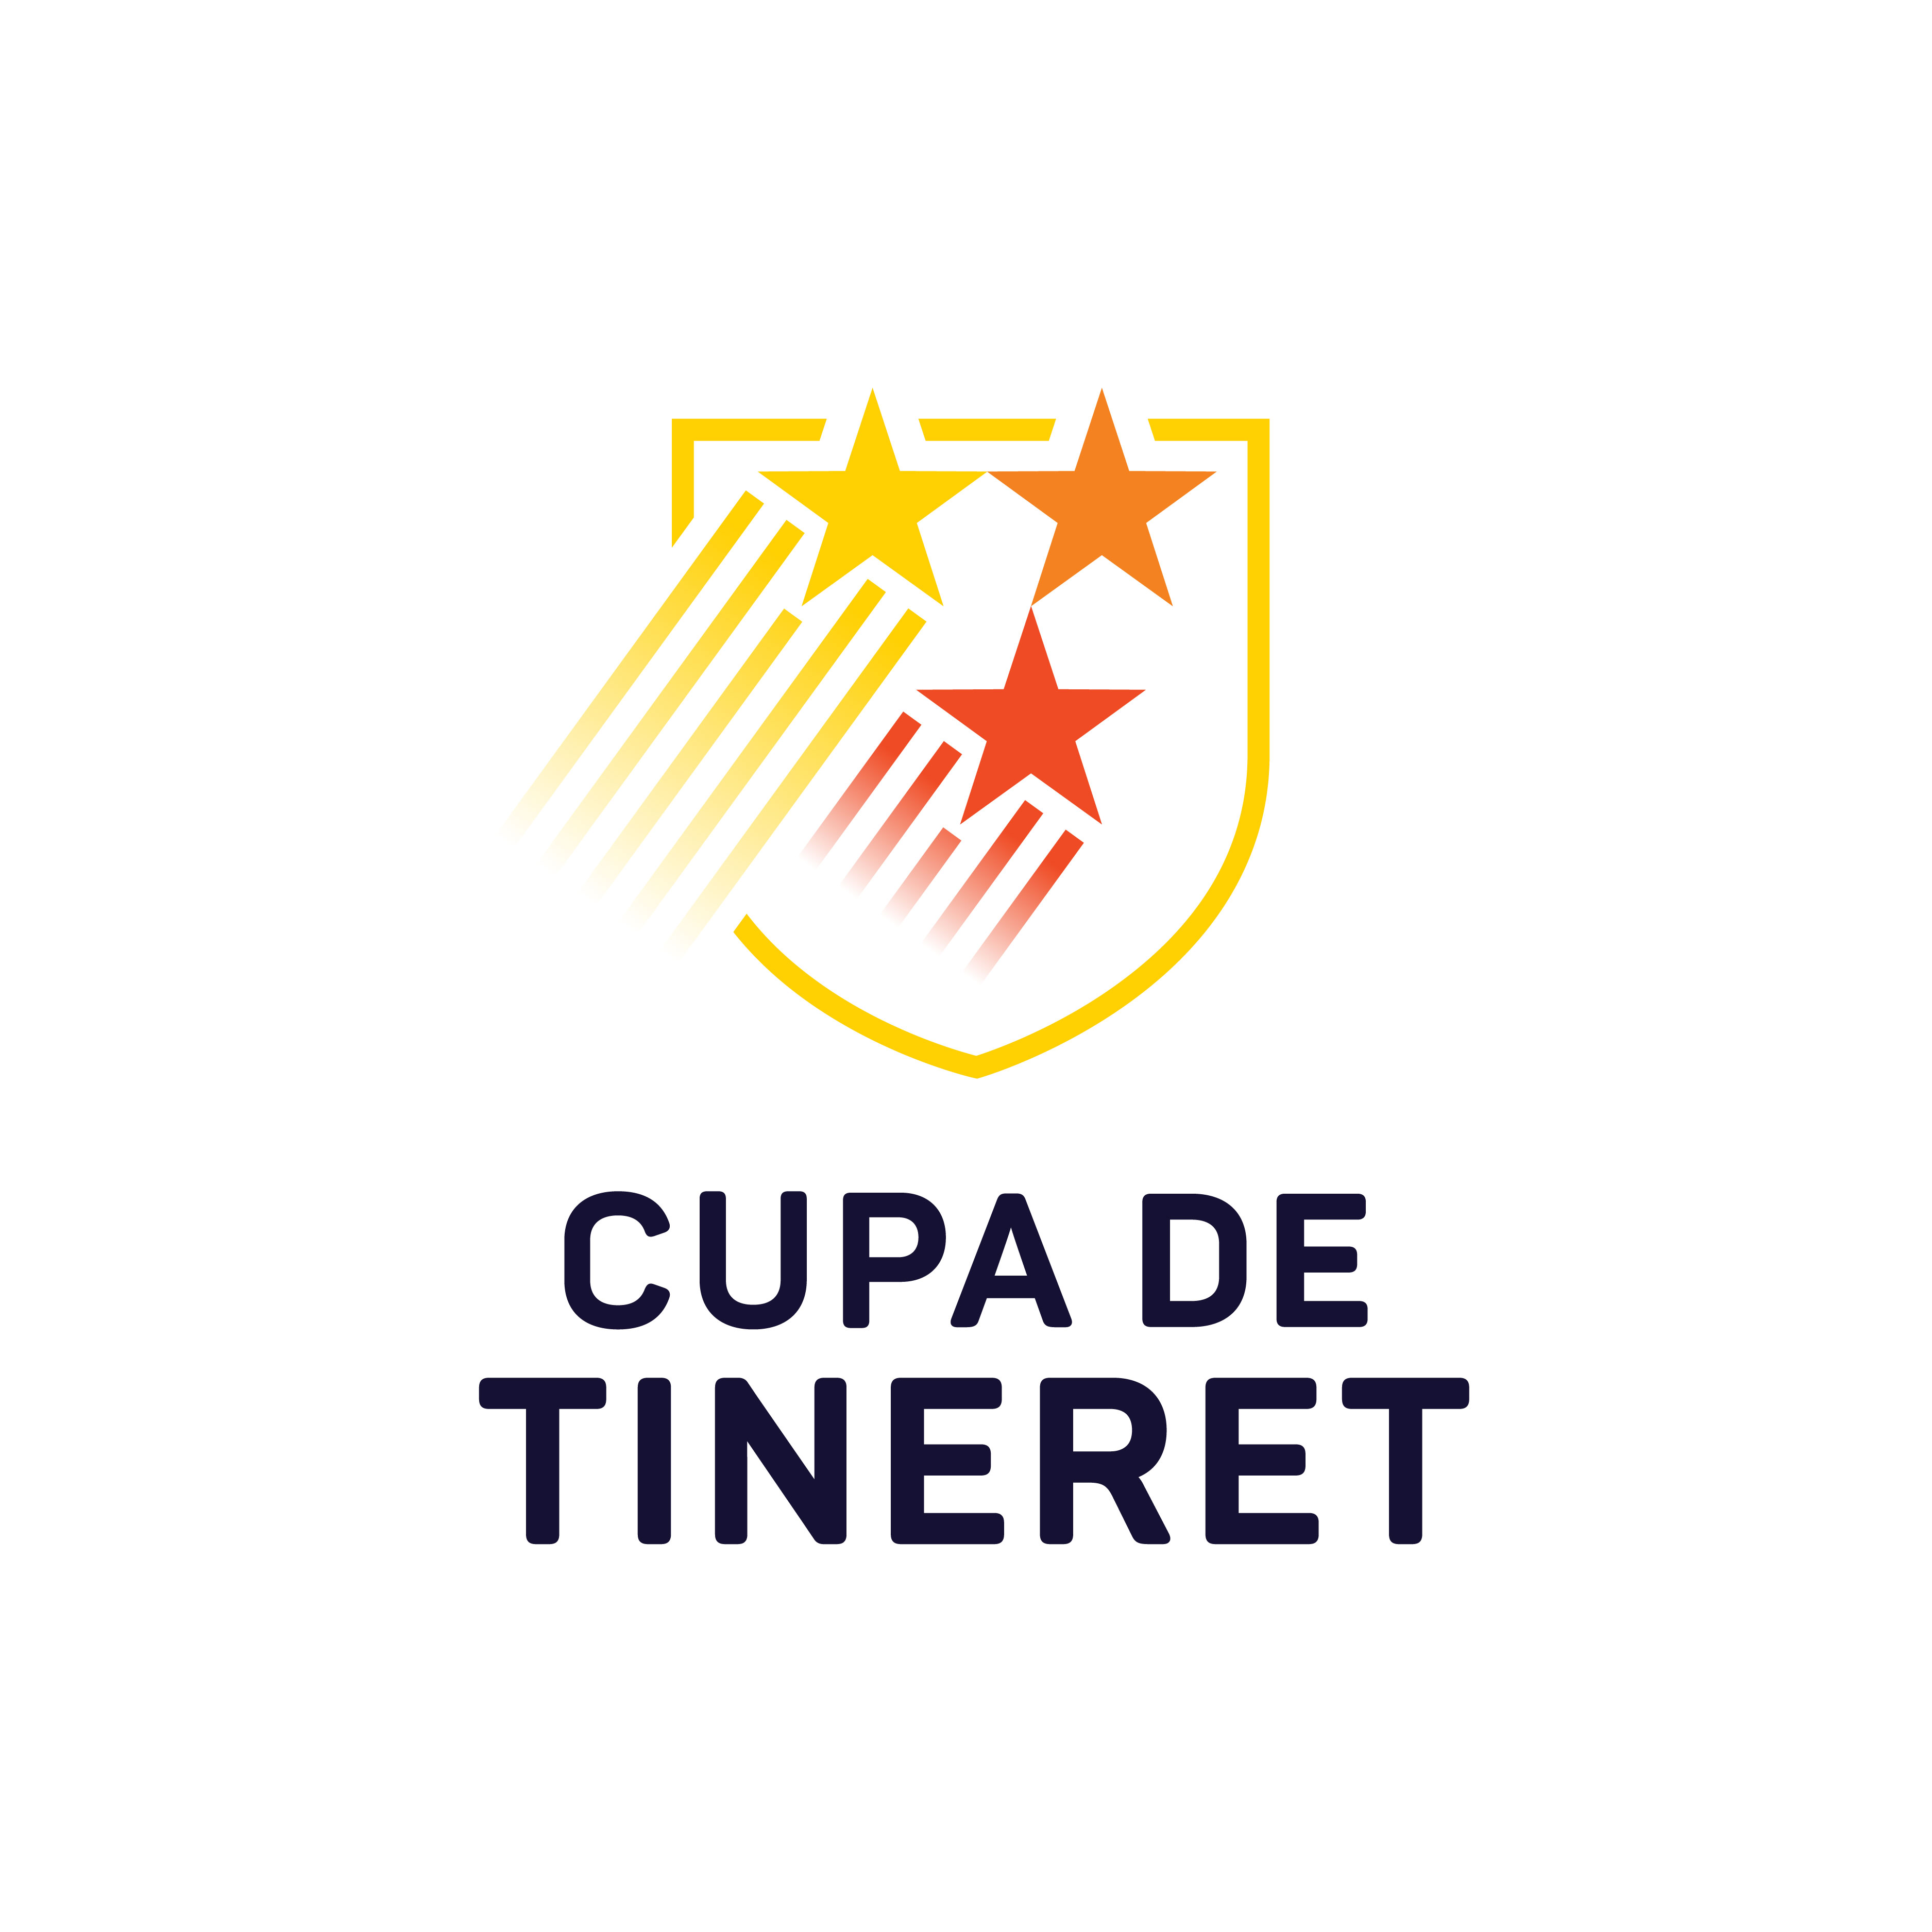 Liga_de_Tineret logo design by logo designer Bloom Communication SRL for your inspiration and for the worlds largest logo competition